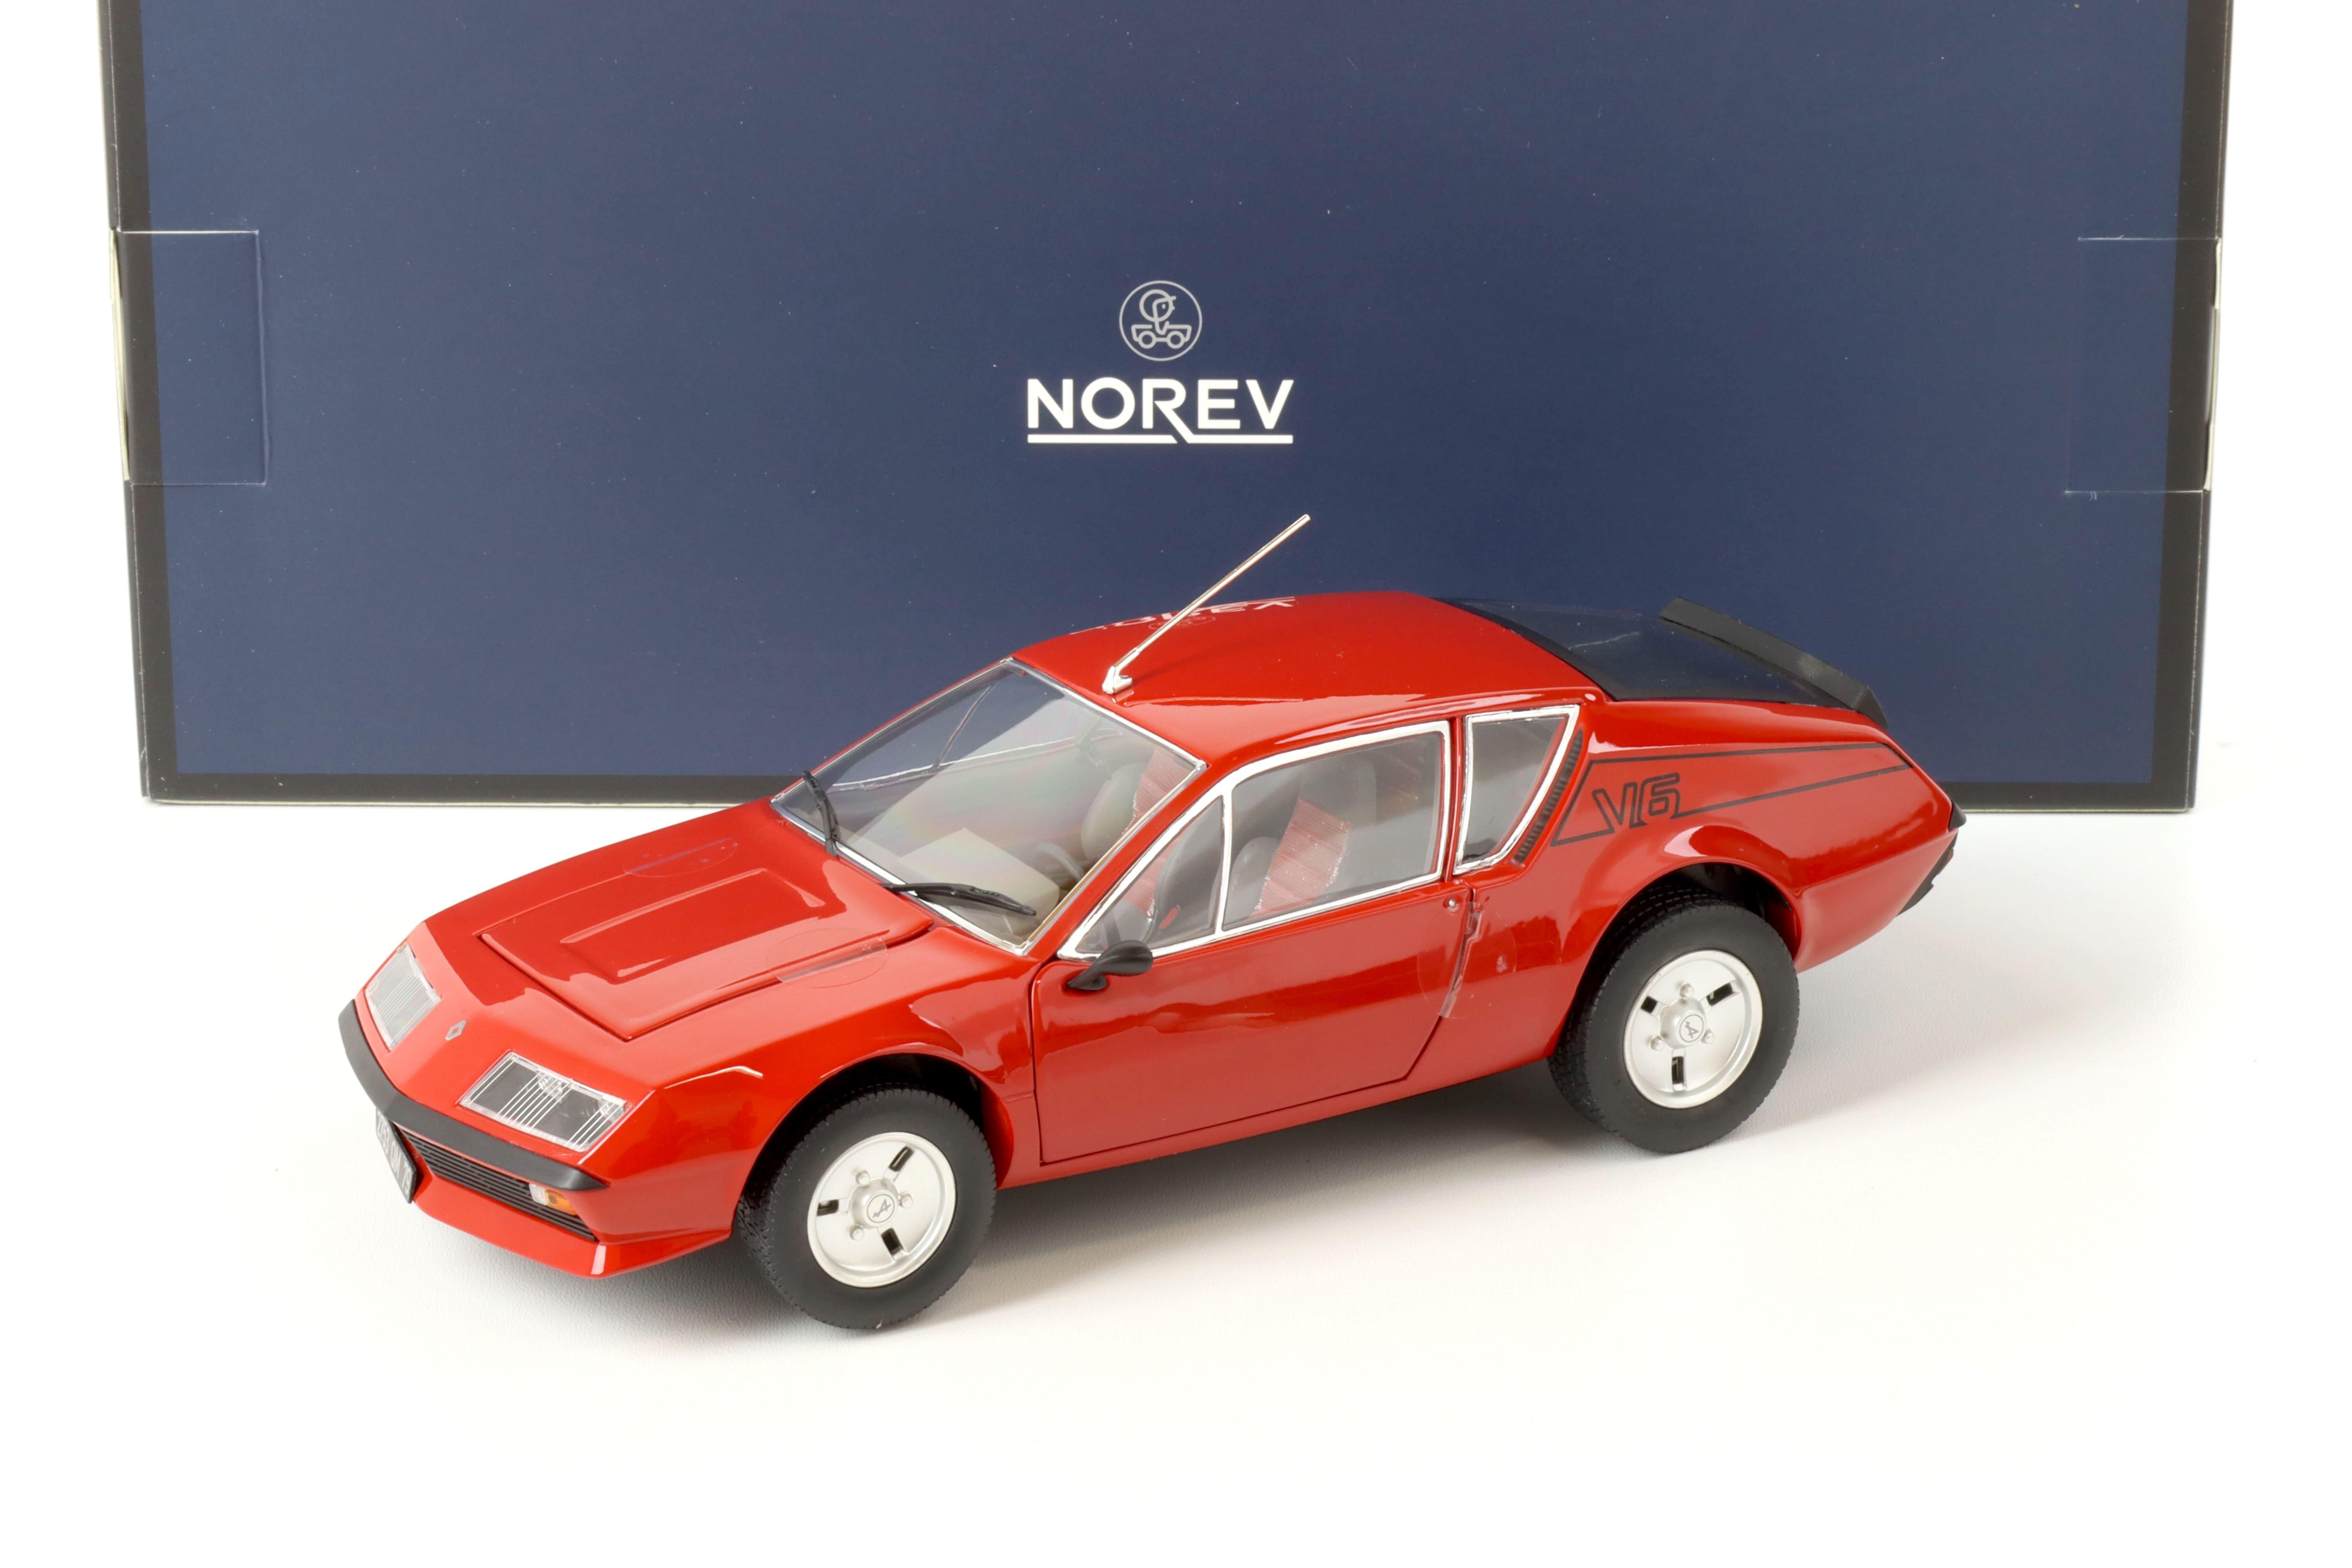 1:18 Norev Renault Alpine A310 V6 red with V6 deco 1979 - Limited 200 pcs.